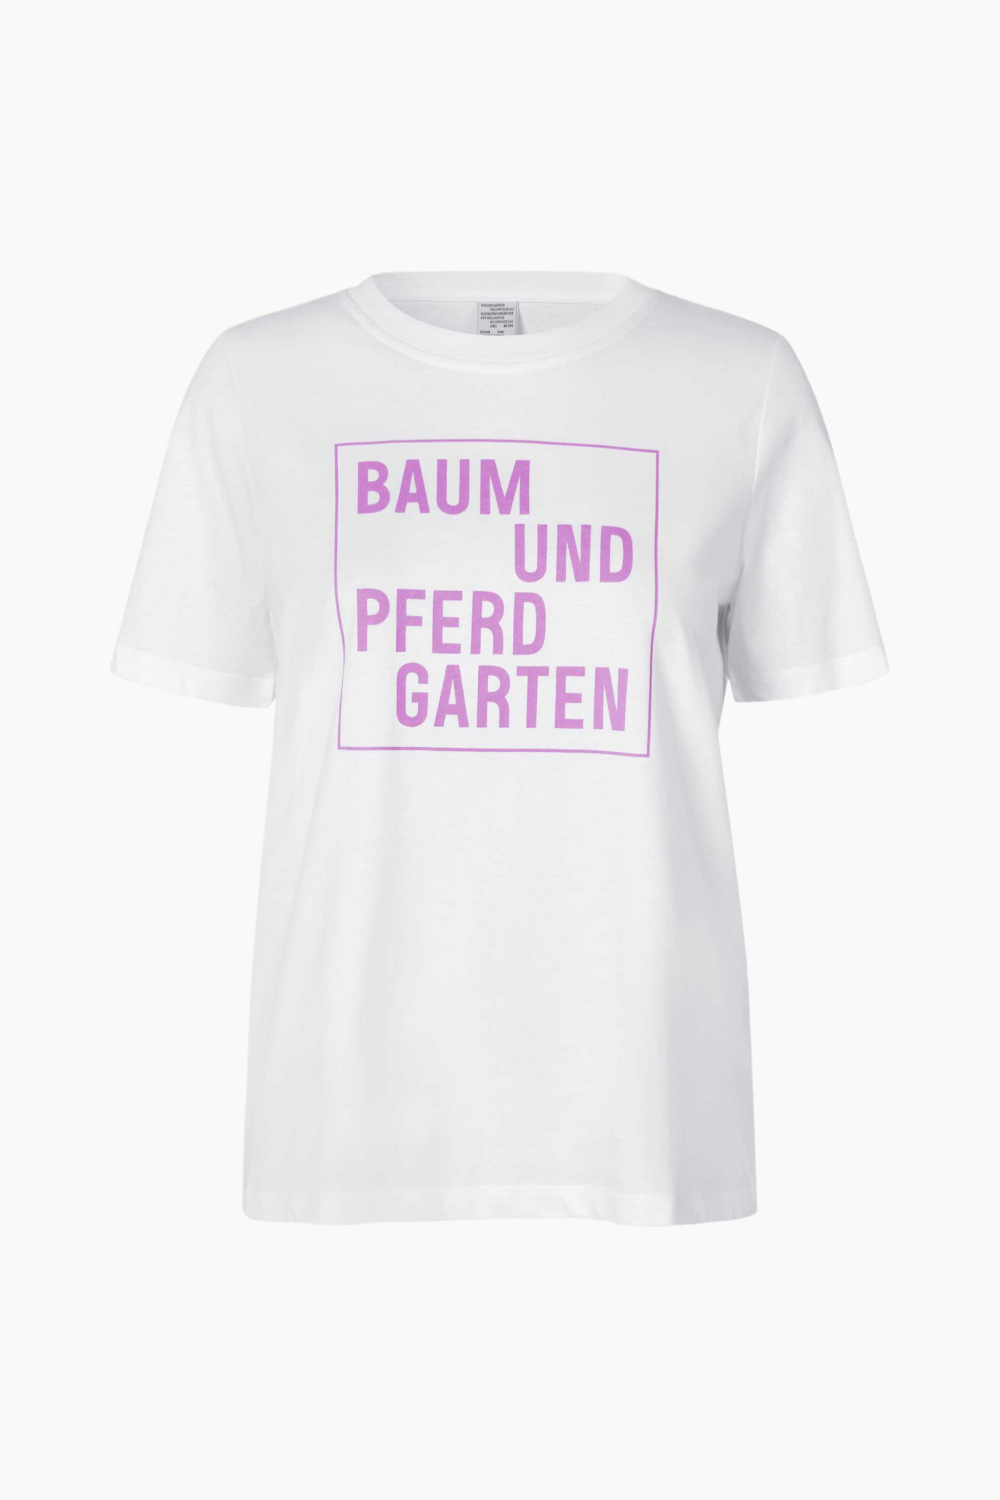 Se Jawo T-Shirt - Orchid Logo Box - Baum und Pferdgarten - Hvid M hos QNTS.dk